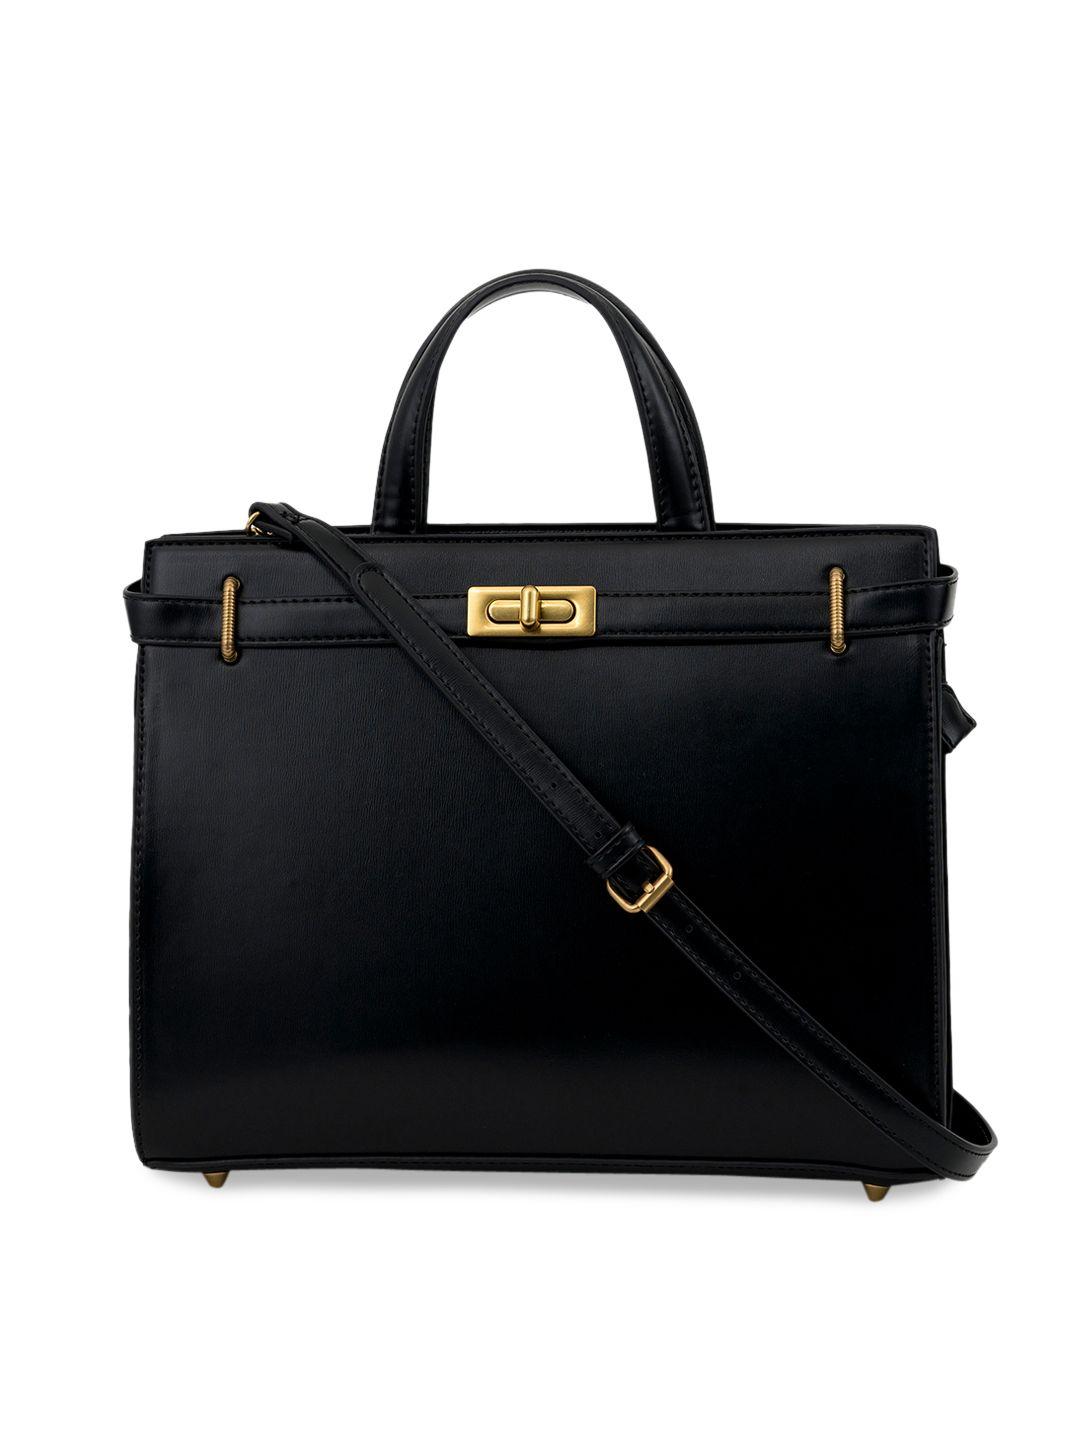 miraggio black satchel handbag with top handles